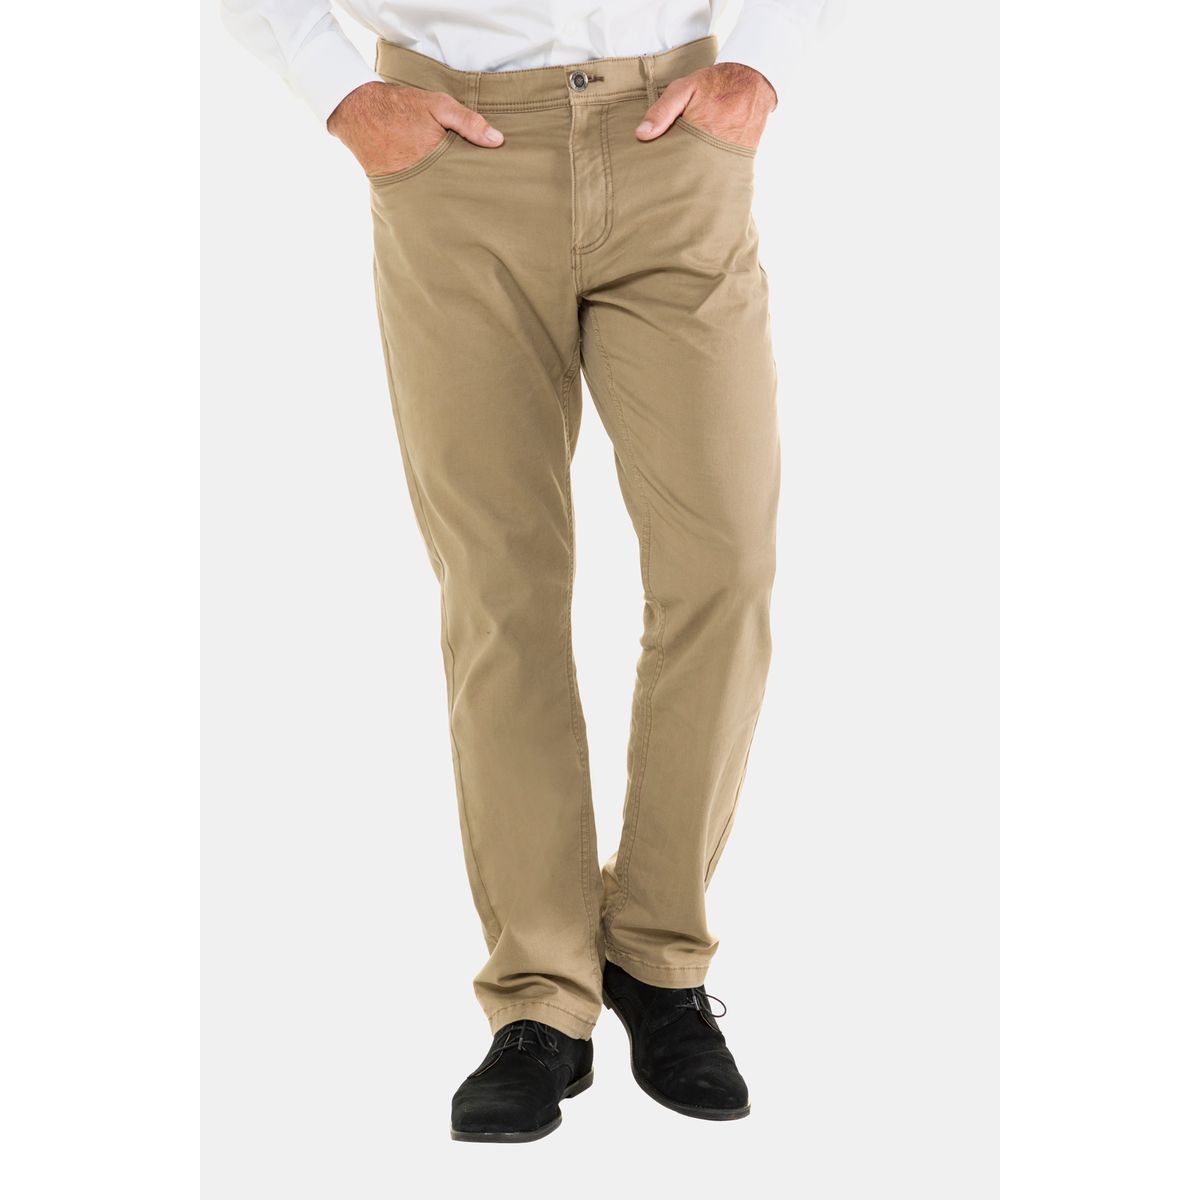 Pantalon avec ceinture élastique facile à mettre pour homme âgé -Hiver